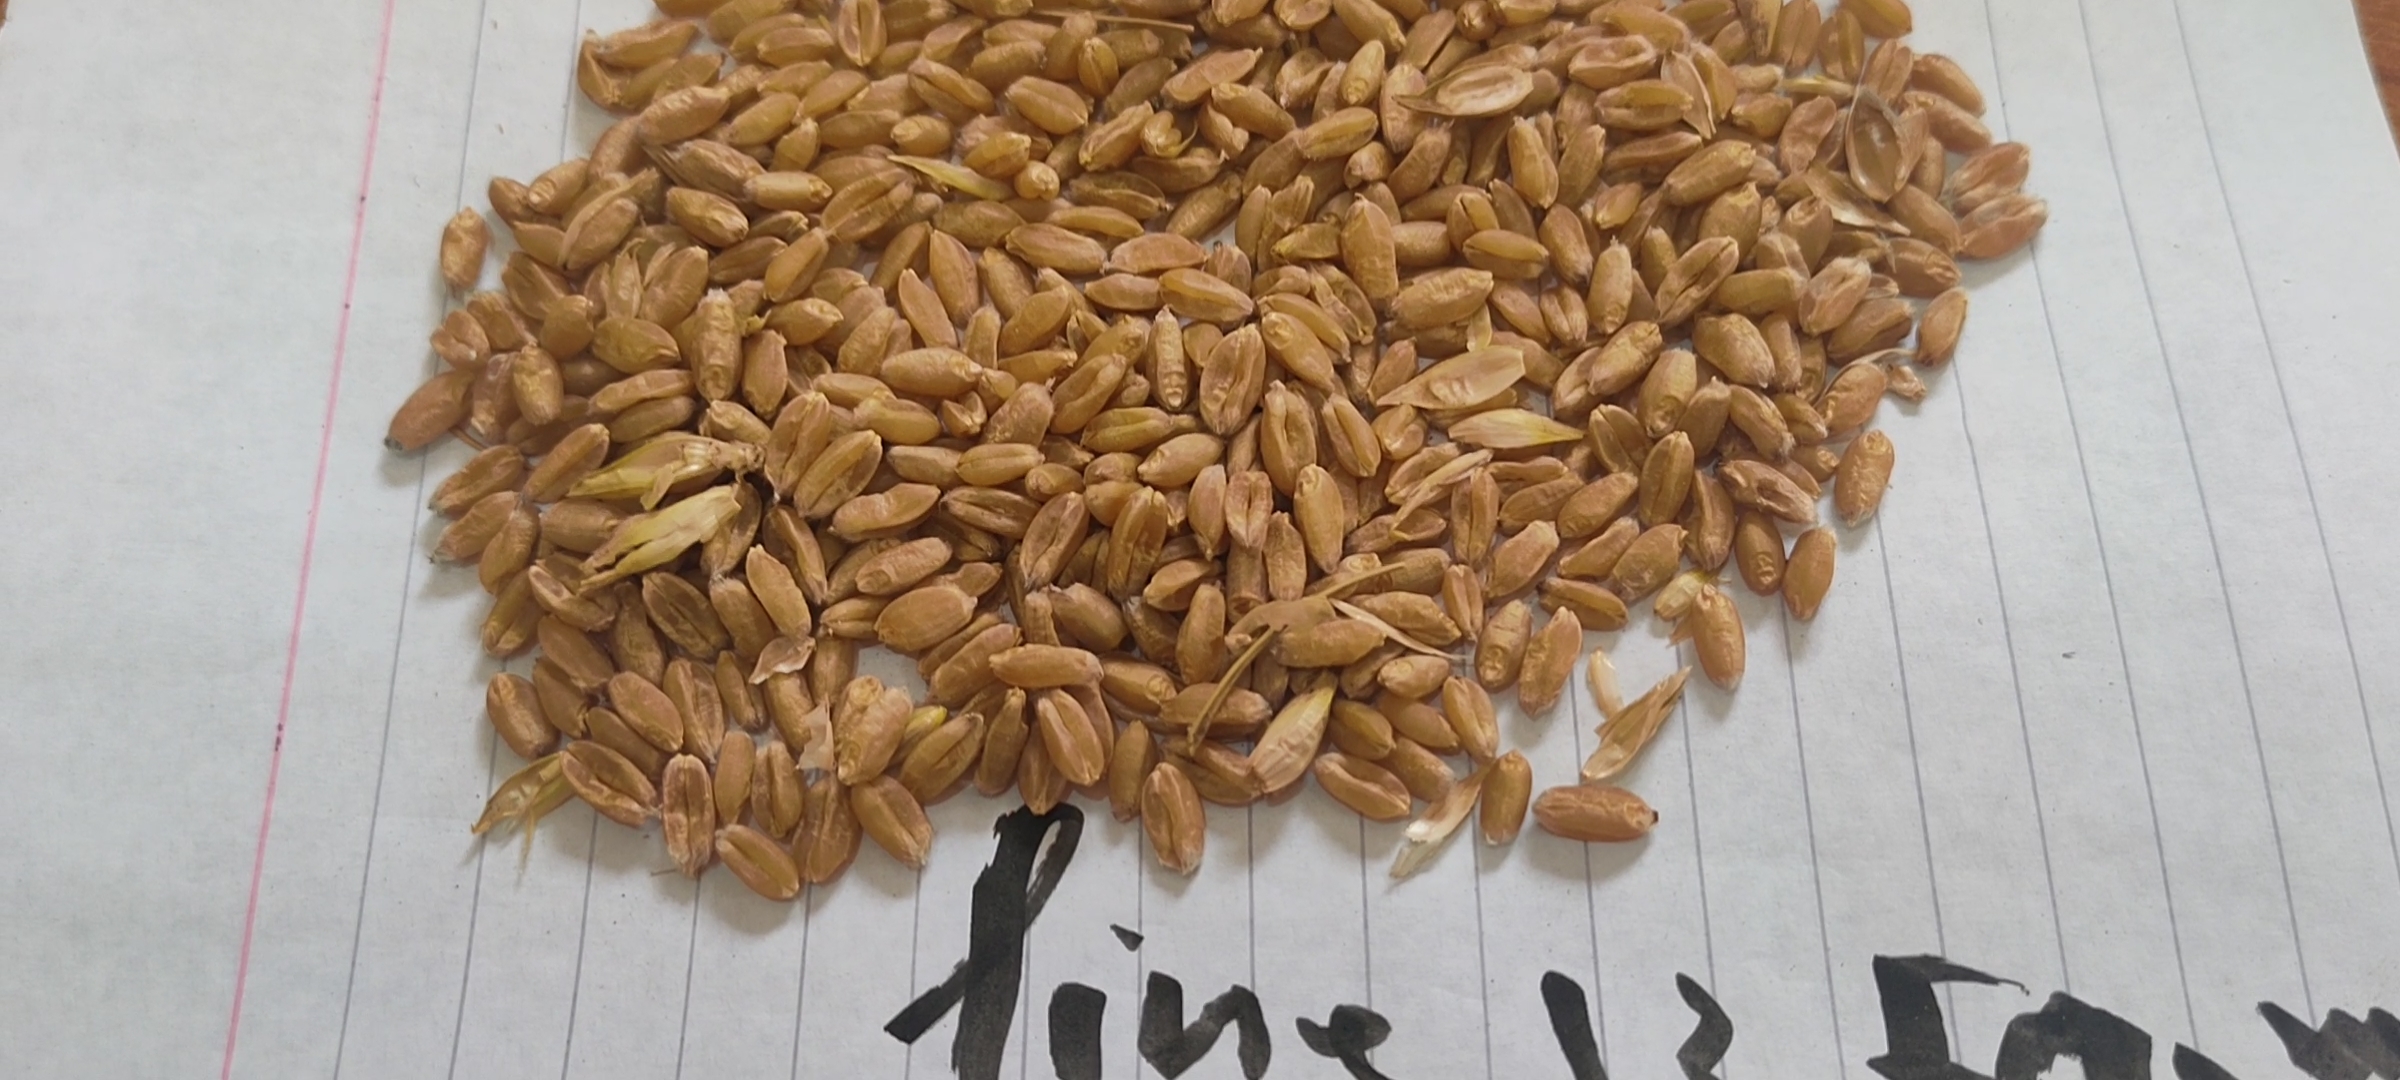 أستاذ زراعة الزقازيق ينجح في استباط طفرات من القمح مقاومة عالية للملوحة (2)